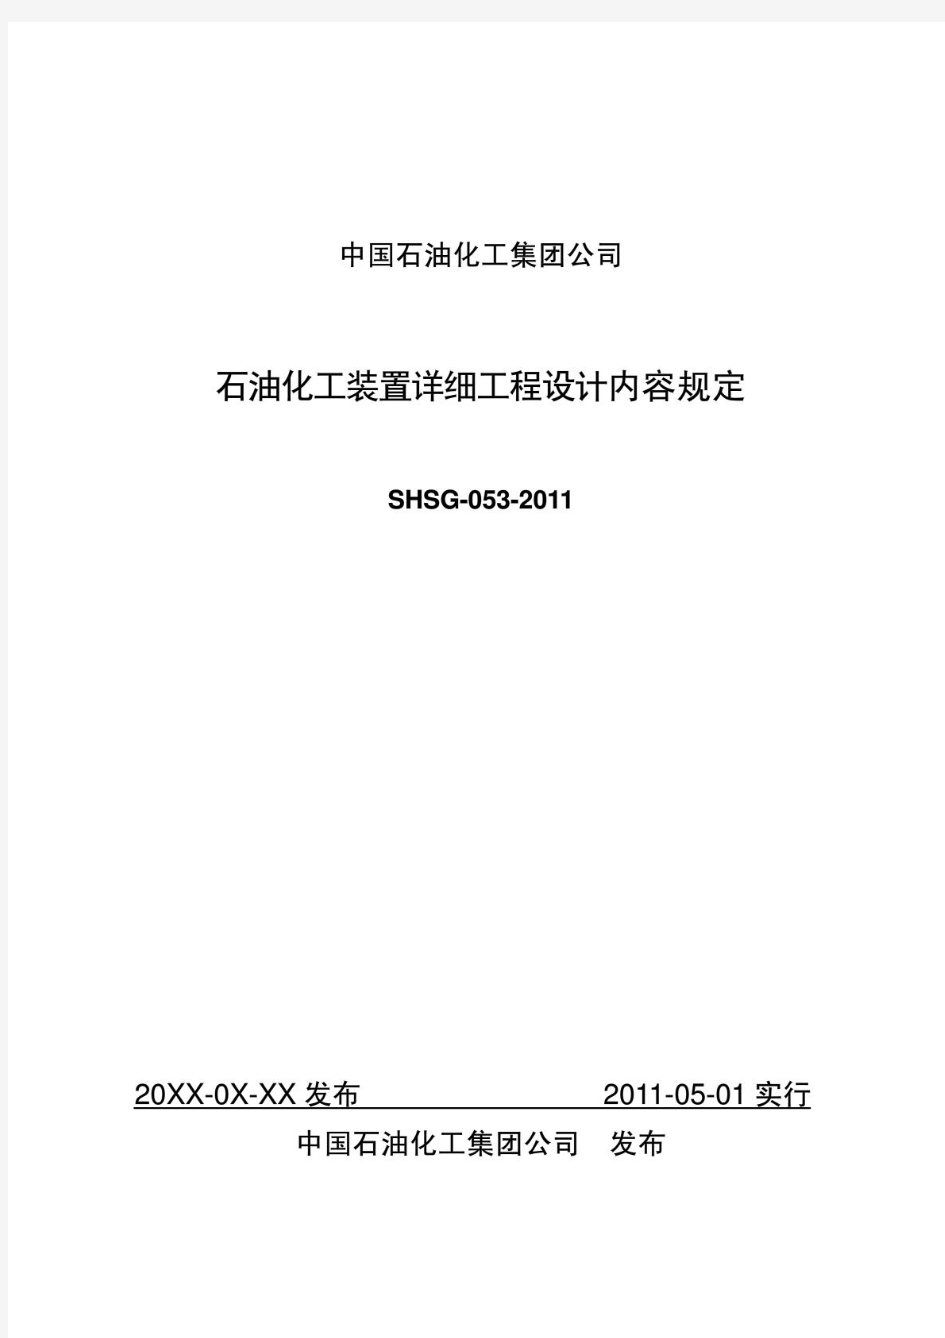 SHSG-053-2011_石油化工装置详细工程设计内容规定